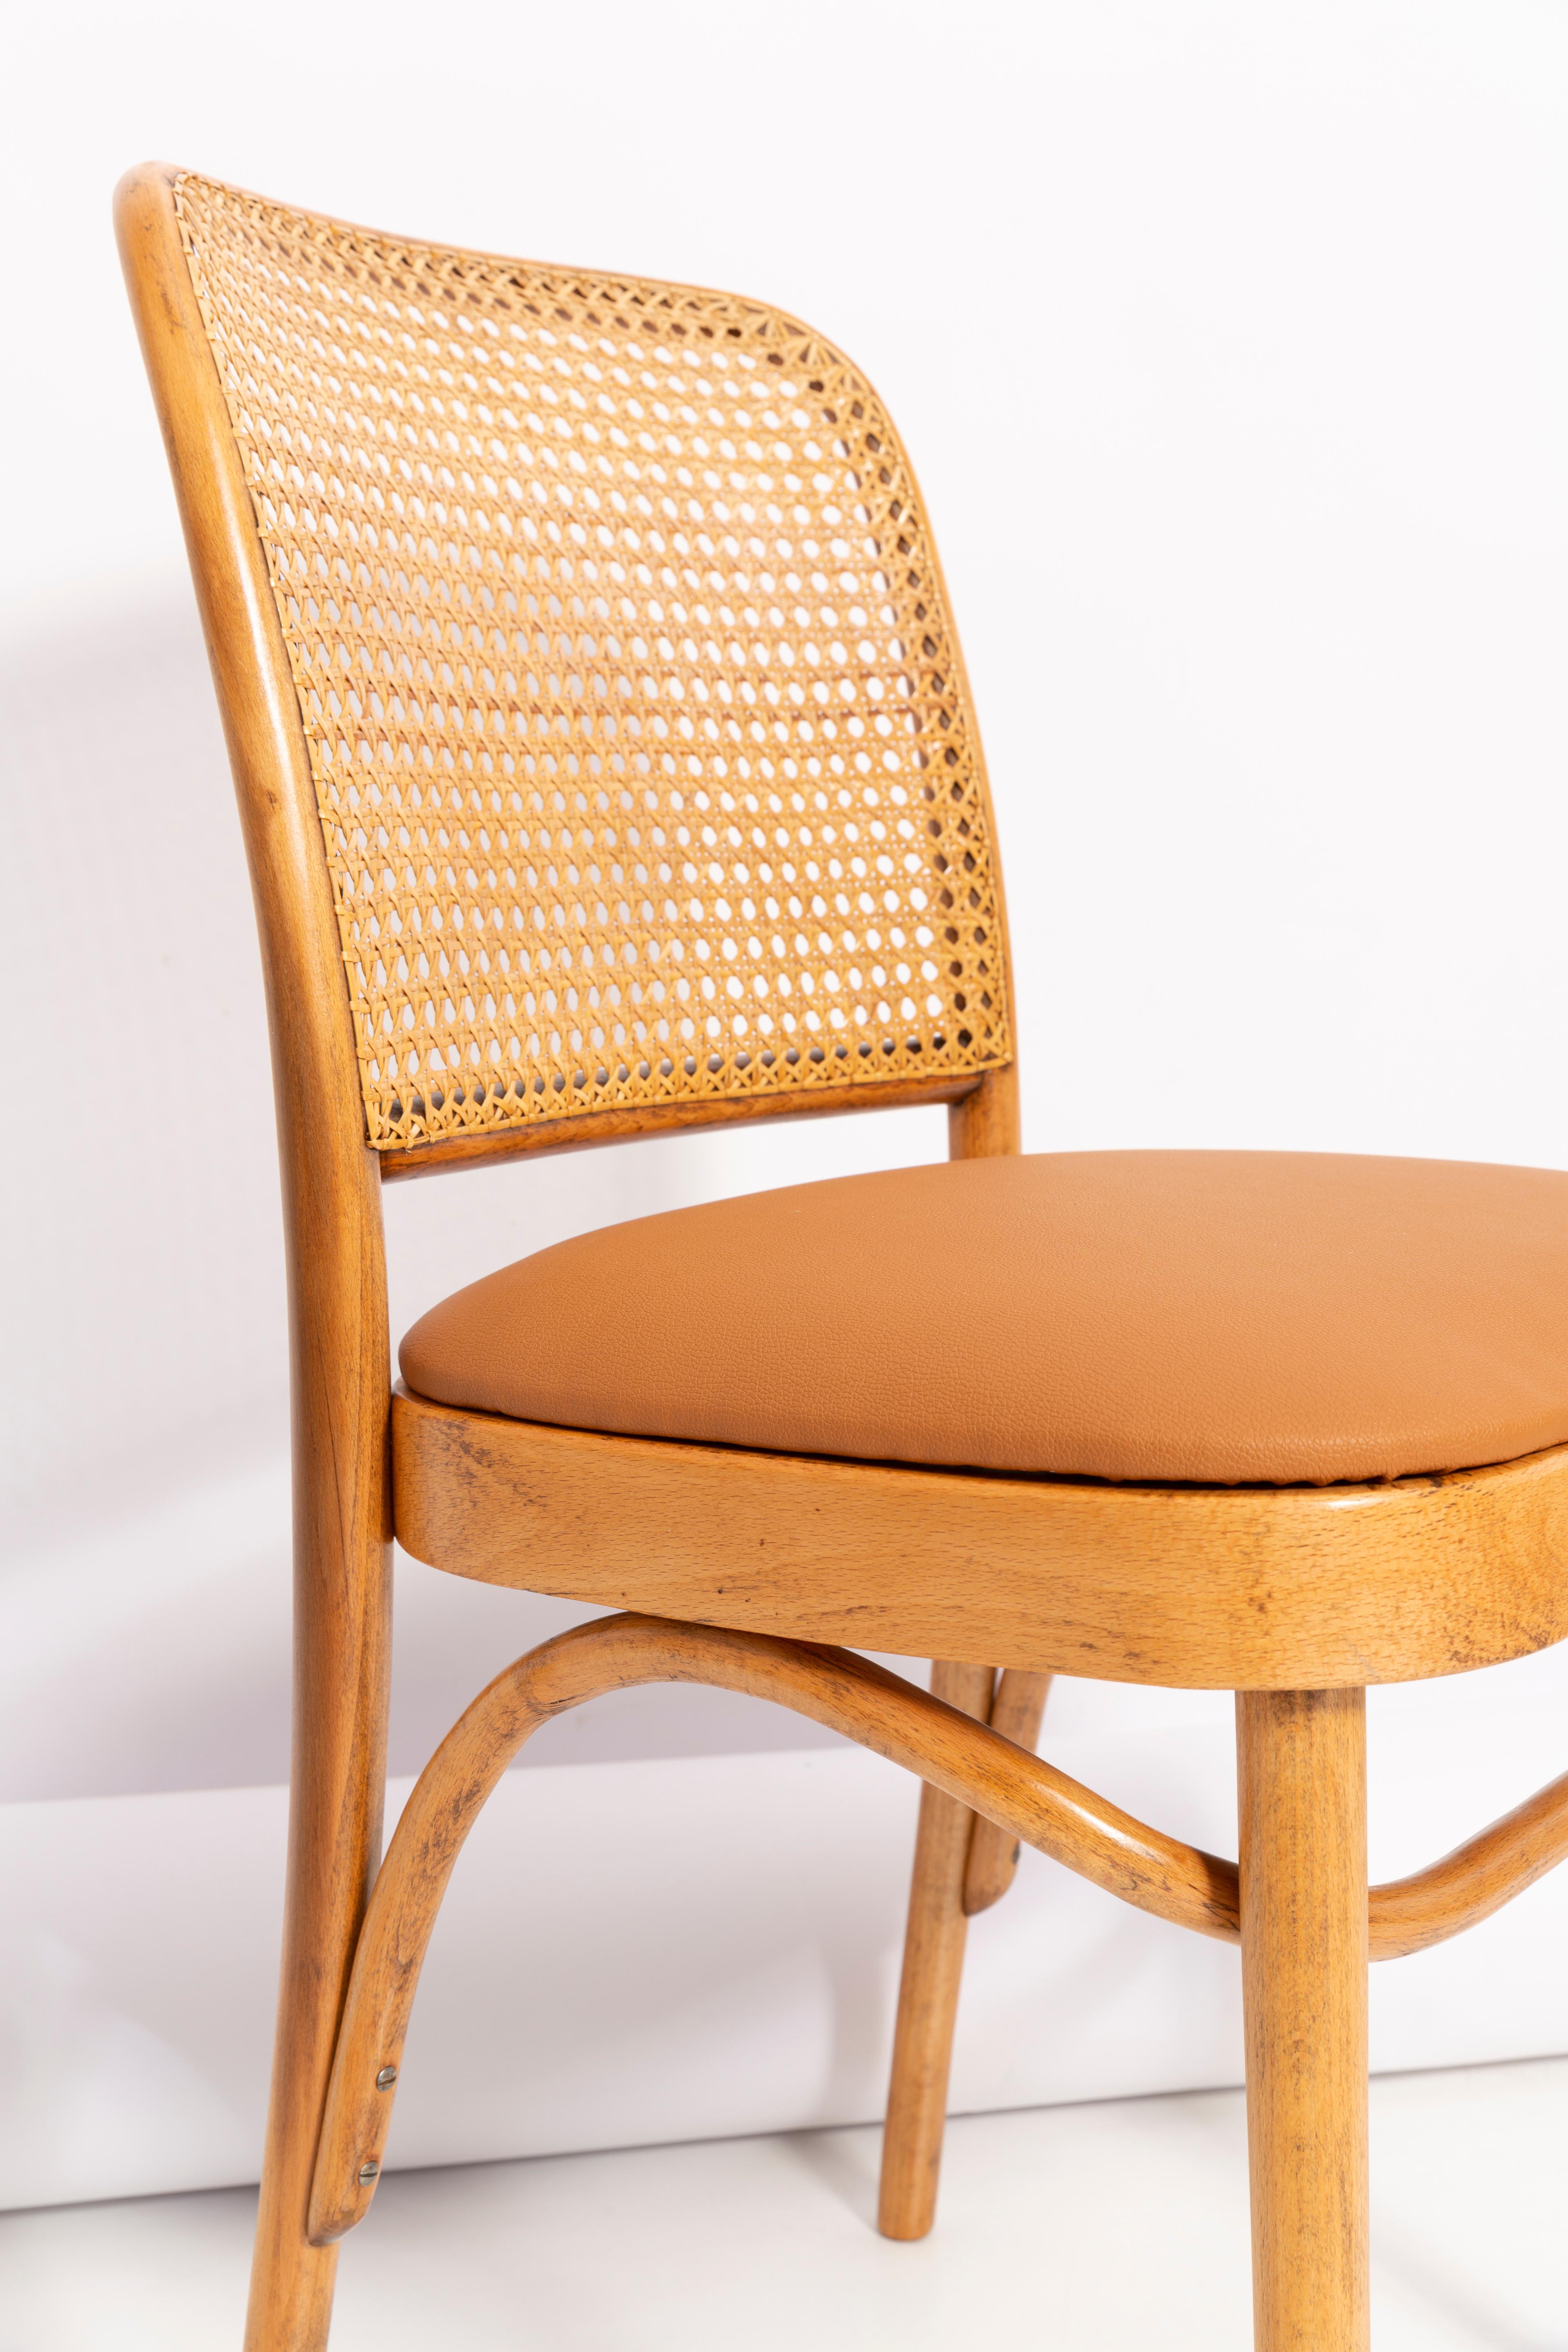 Magnifiques chaises en rotin, en faux cuir de chameau et en bois. Elles ont été produites dans l'usine de menuiserie Thonet et nous les avons entièrement rénovées. La construction est en bois de hêtre teinté à l'eau en couleur brun chêne. Les